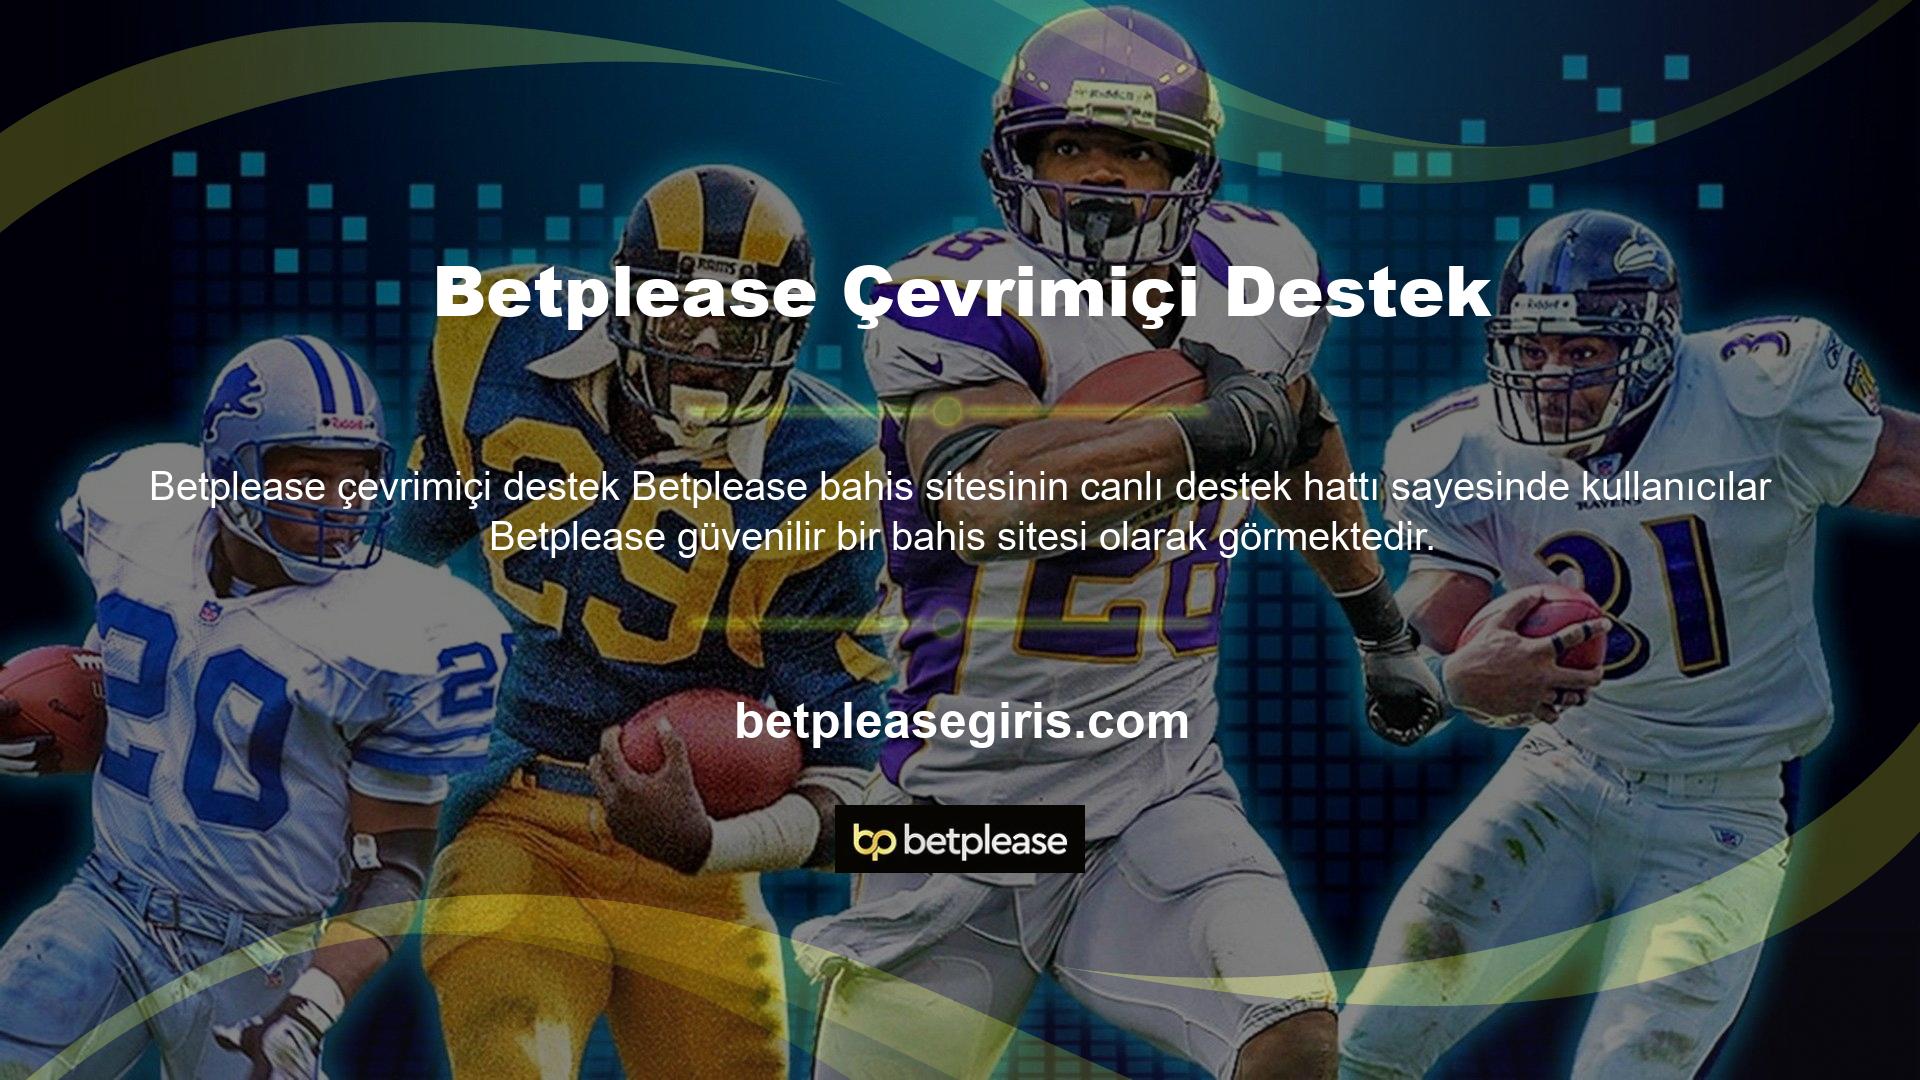 Betplease canlı destek hattı, kullanıcıların web sitesi üzerinden sorunlarına hızlı bir şekilde çözüm bulmalarını sağlıyor